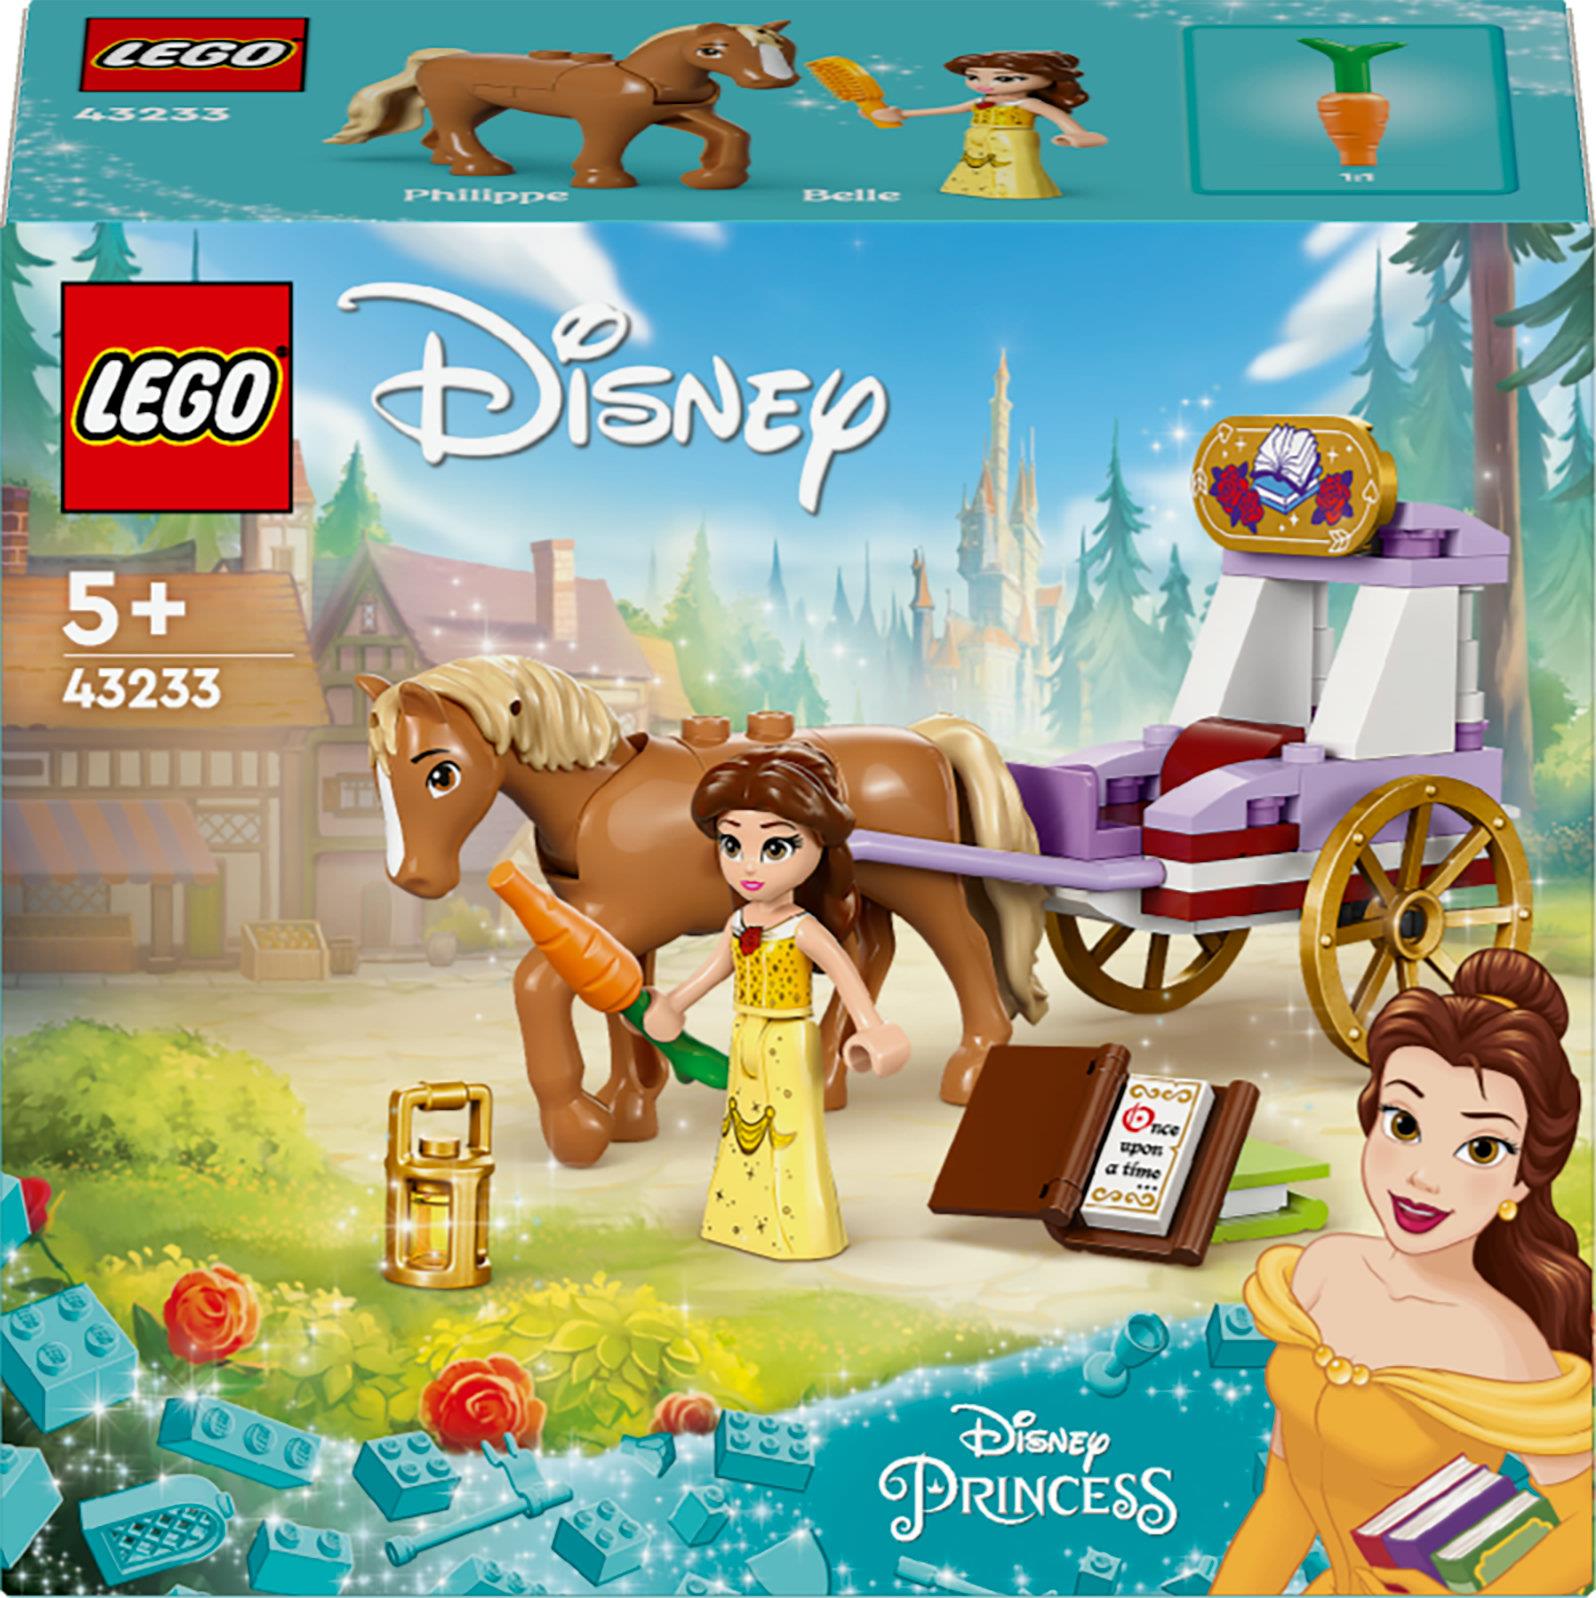 LEGO Disney Princess 43233